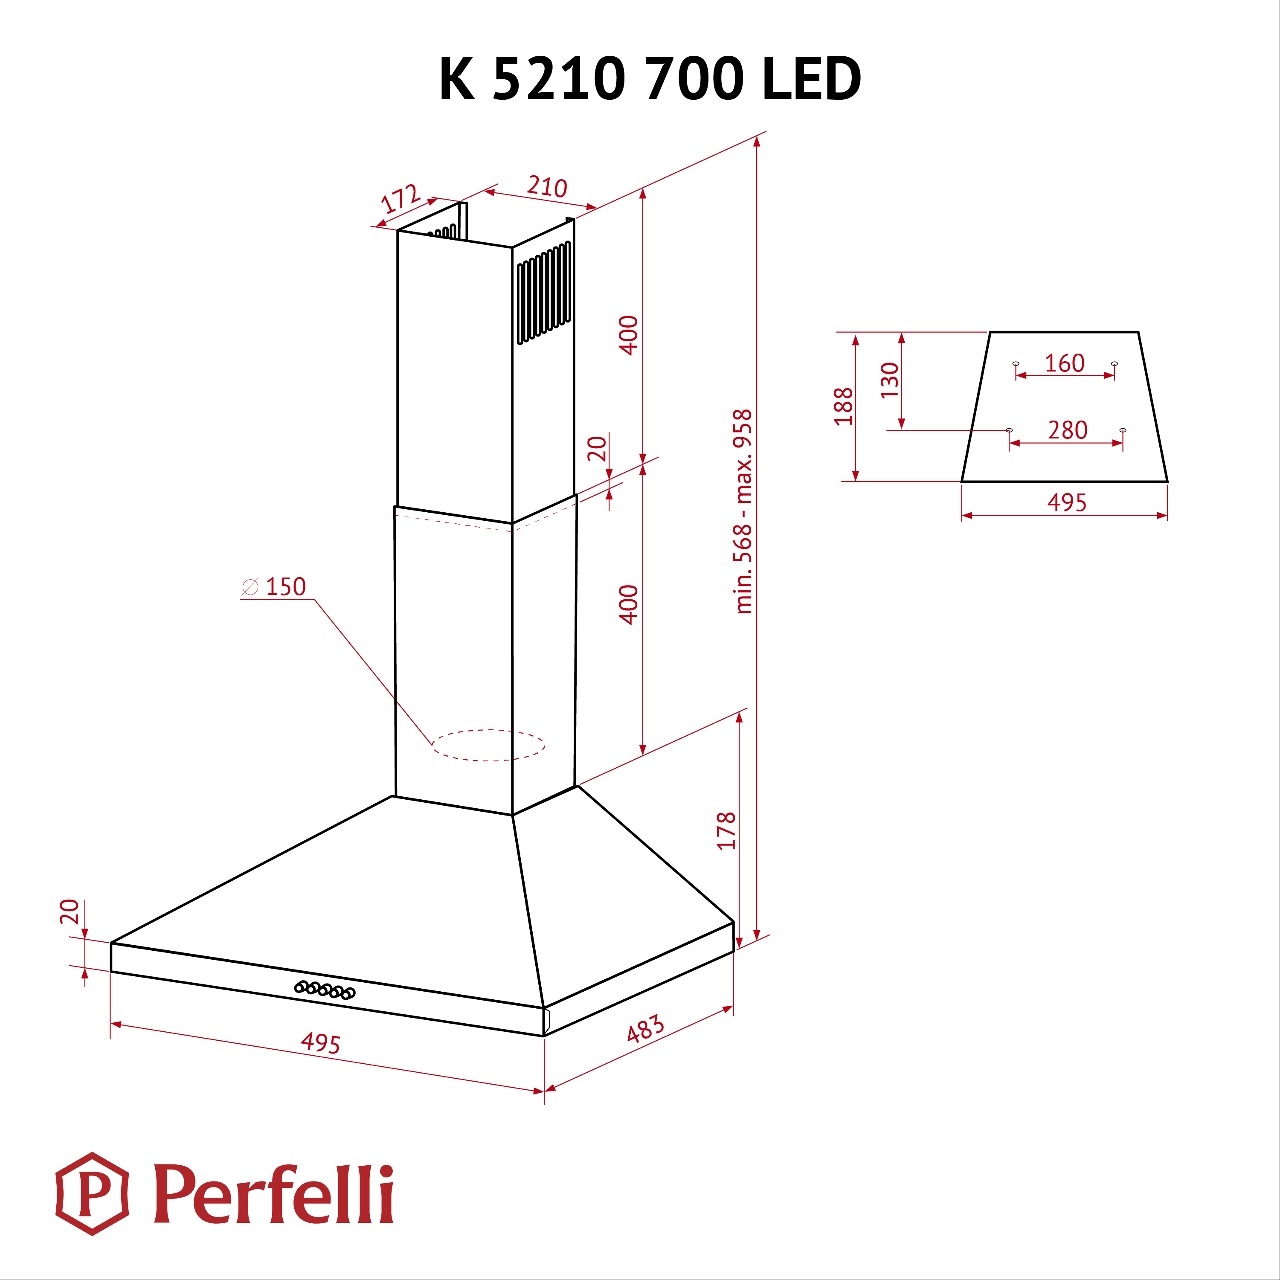 Perfelli K 5210 WH 700 LED Габаритные размеры